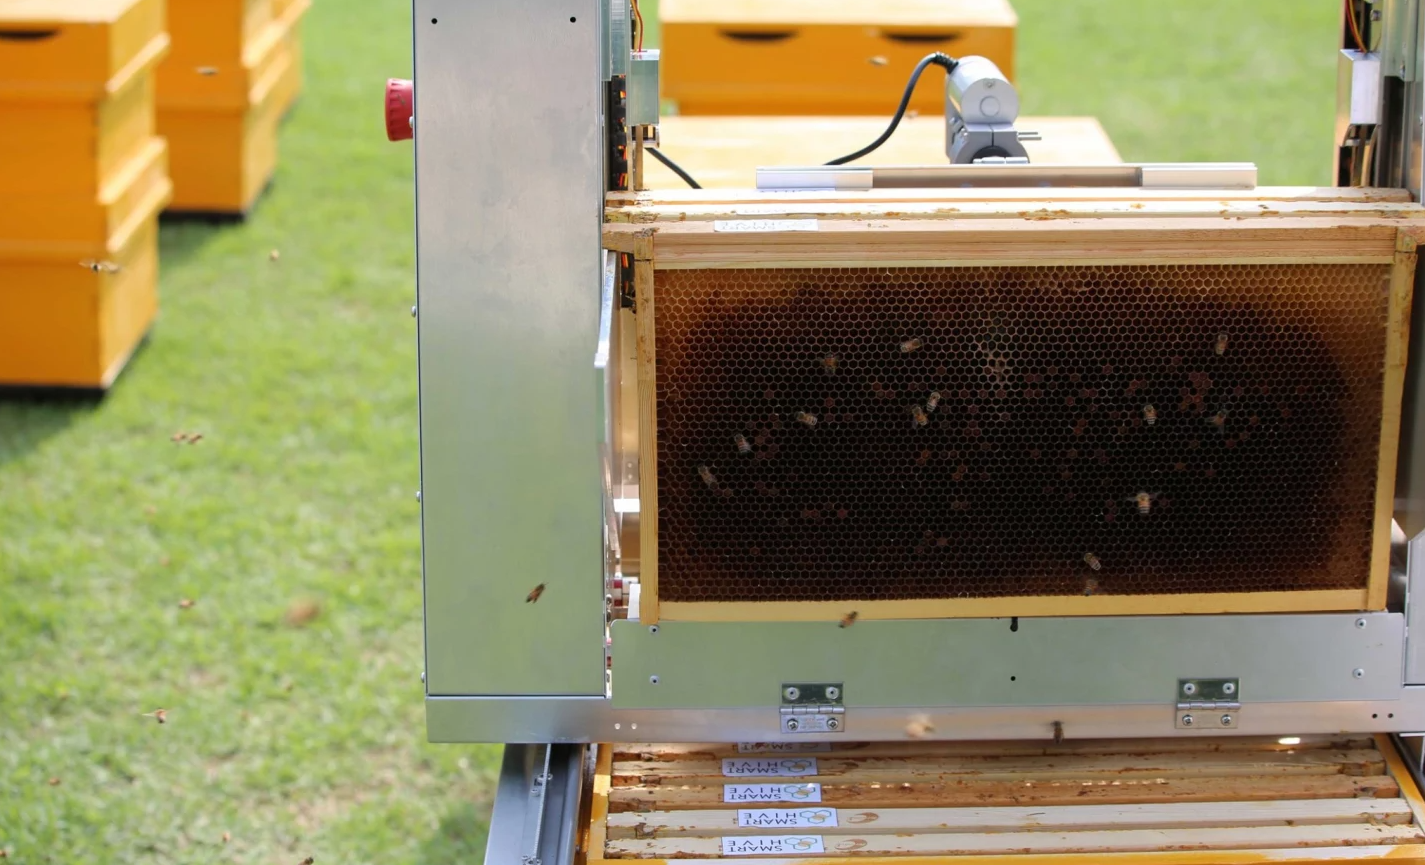 Показана система Hive Controller предназначенная для извлечения сот из улья